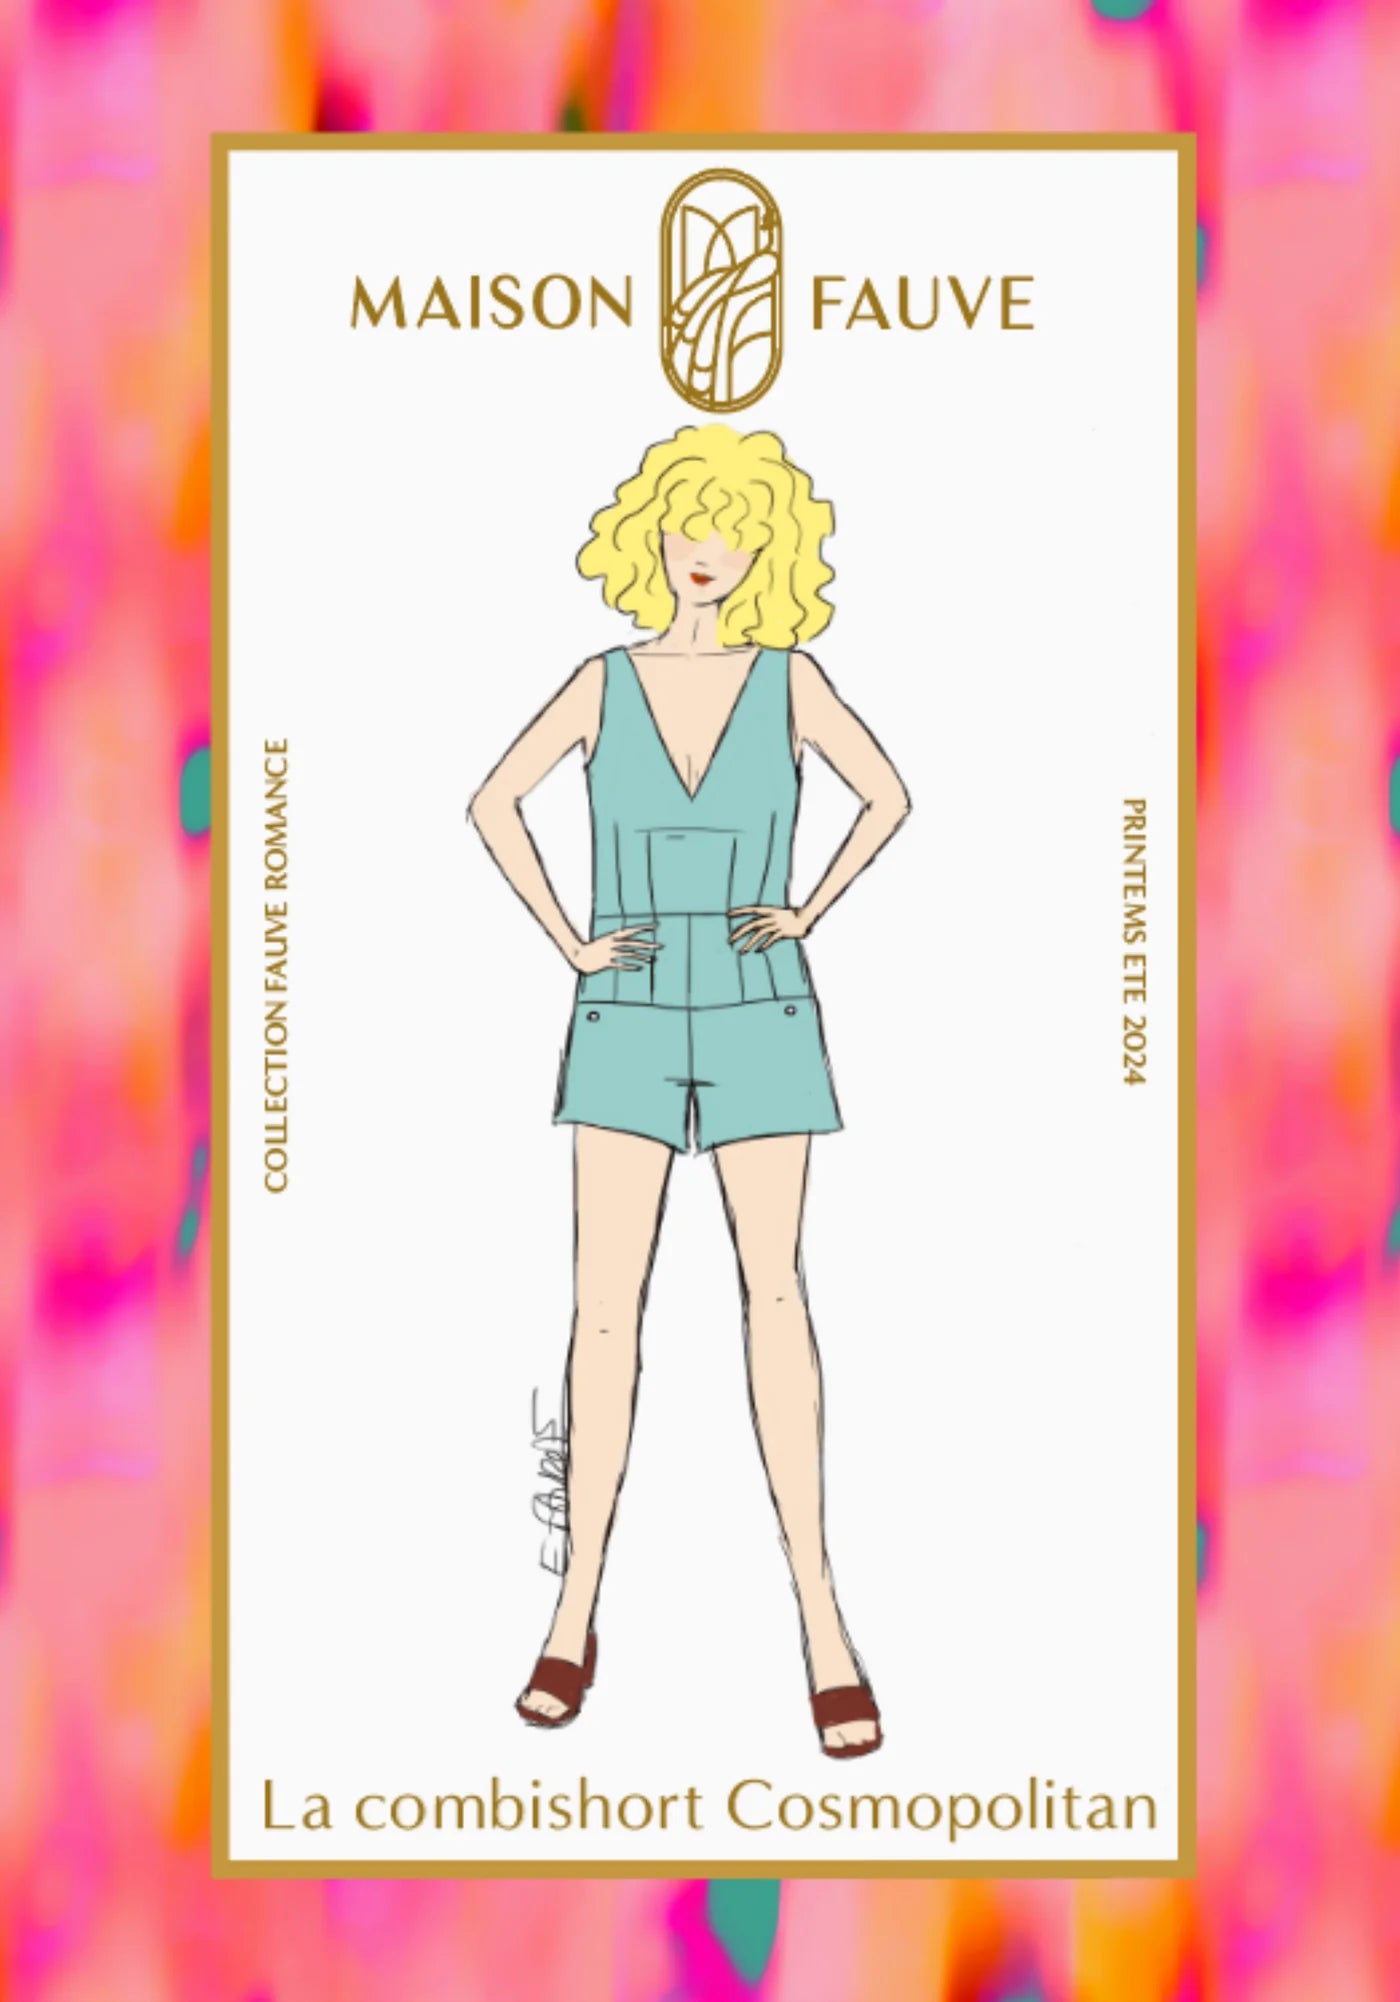 Maison Fauve Cosmopolitan Playsuit and Dress